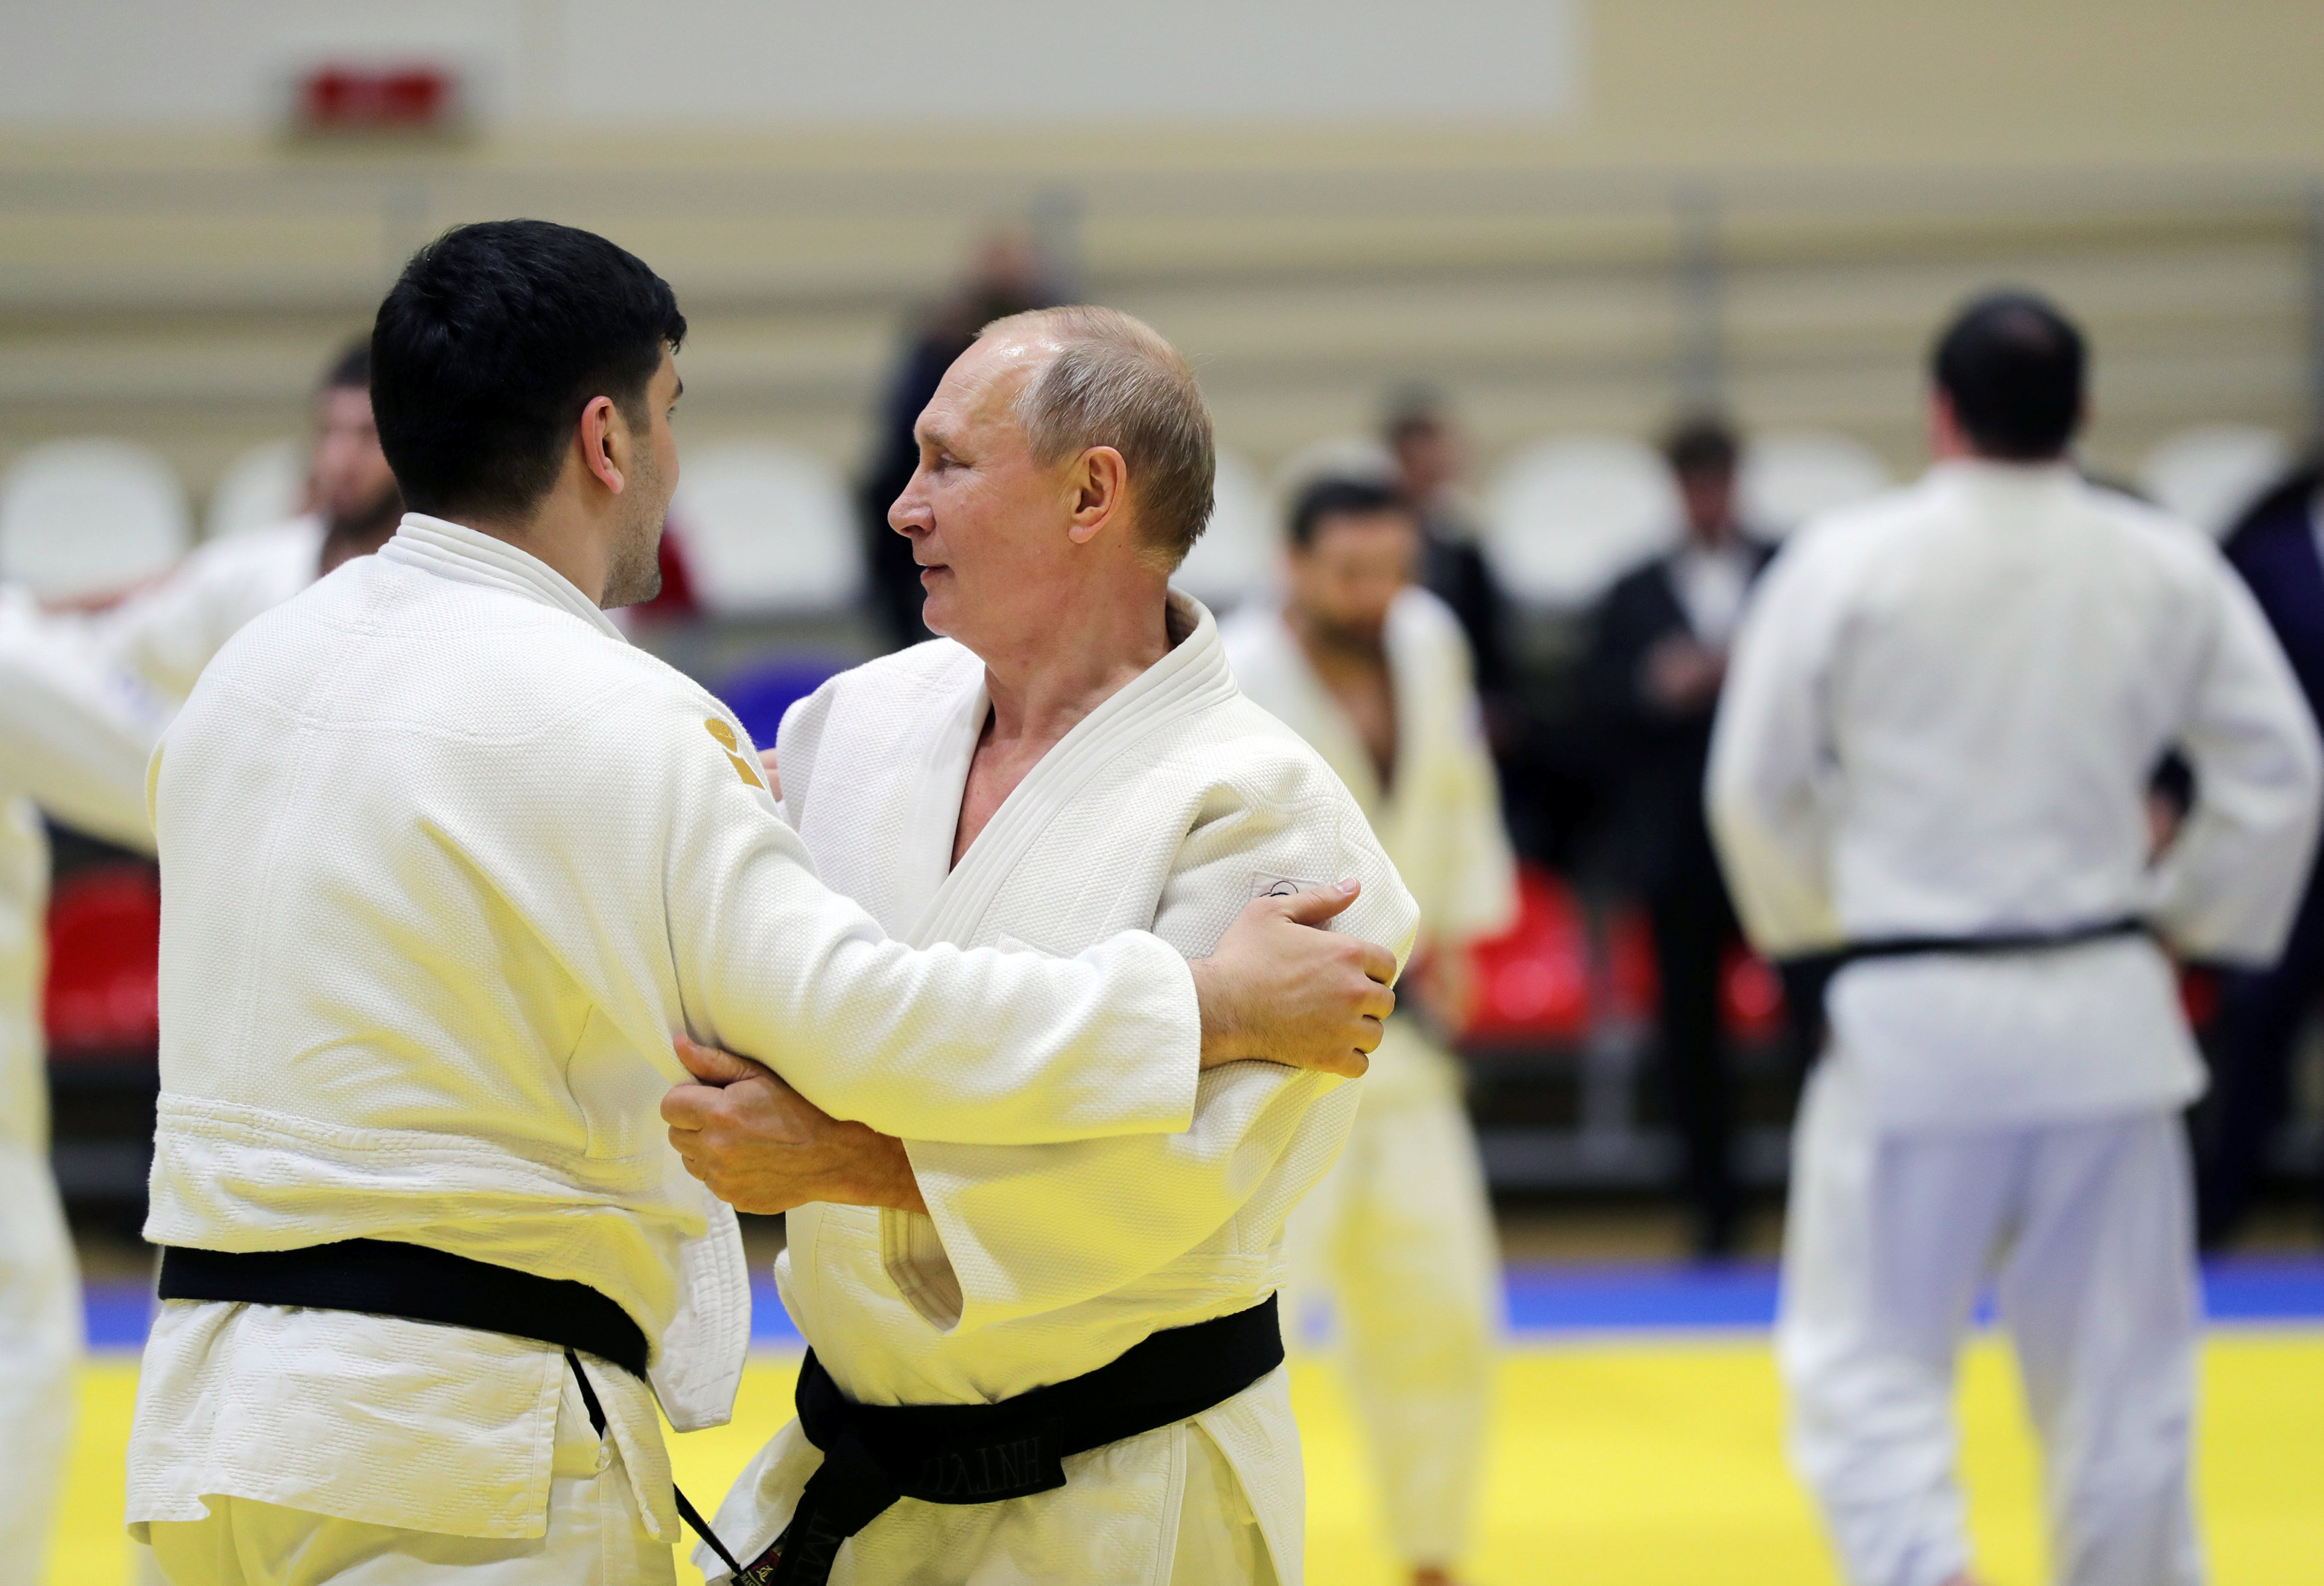 بوتين يمارس رياضة الجودو مع أحد اللاعبين